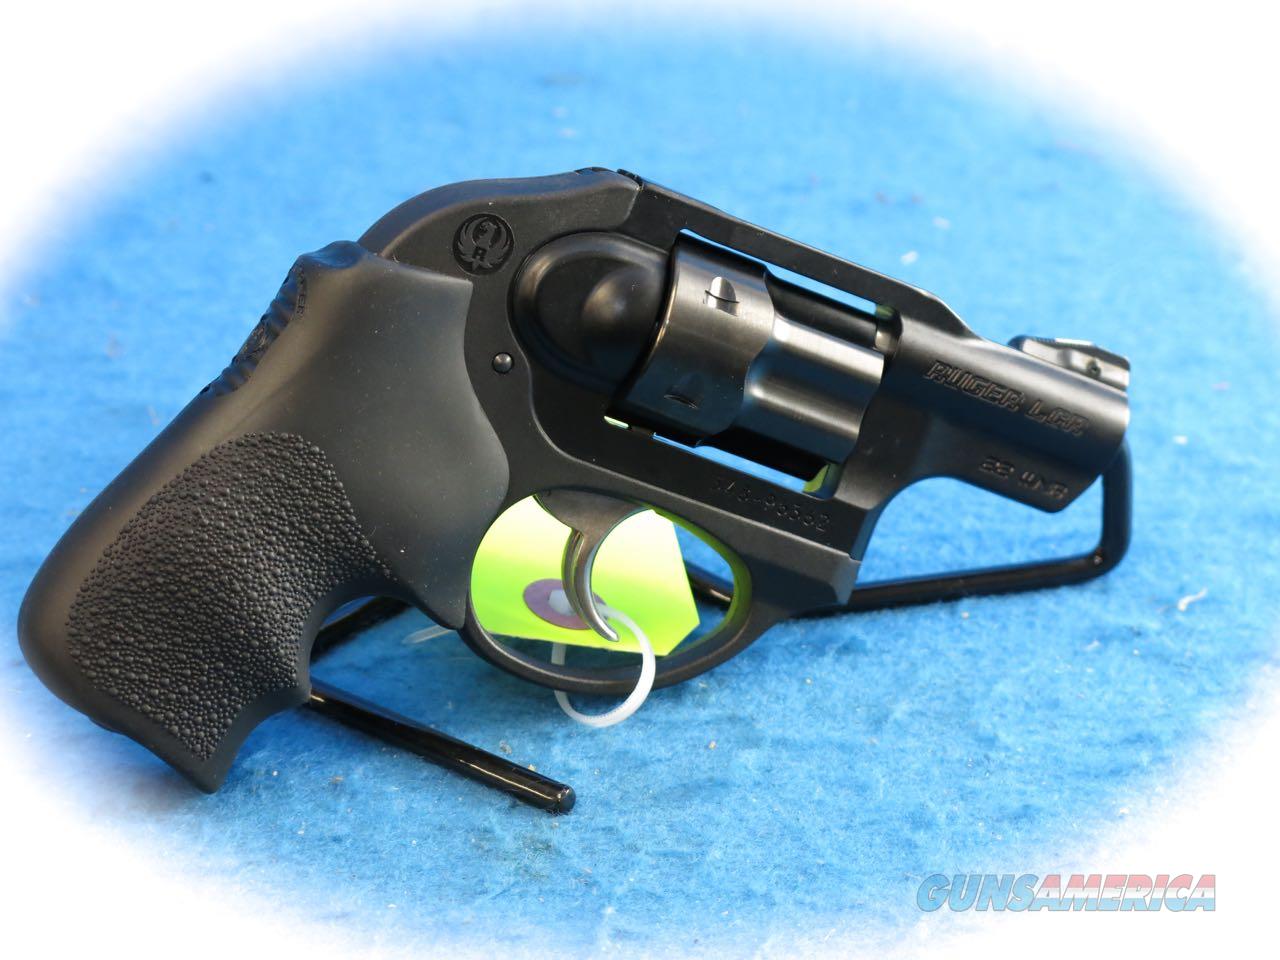 Ruger Lcr 22 Magnum Revolver 5414 For Sale At 937563588